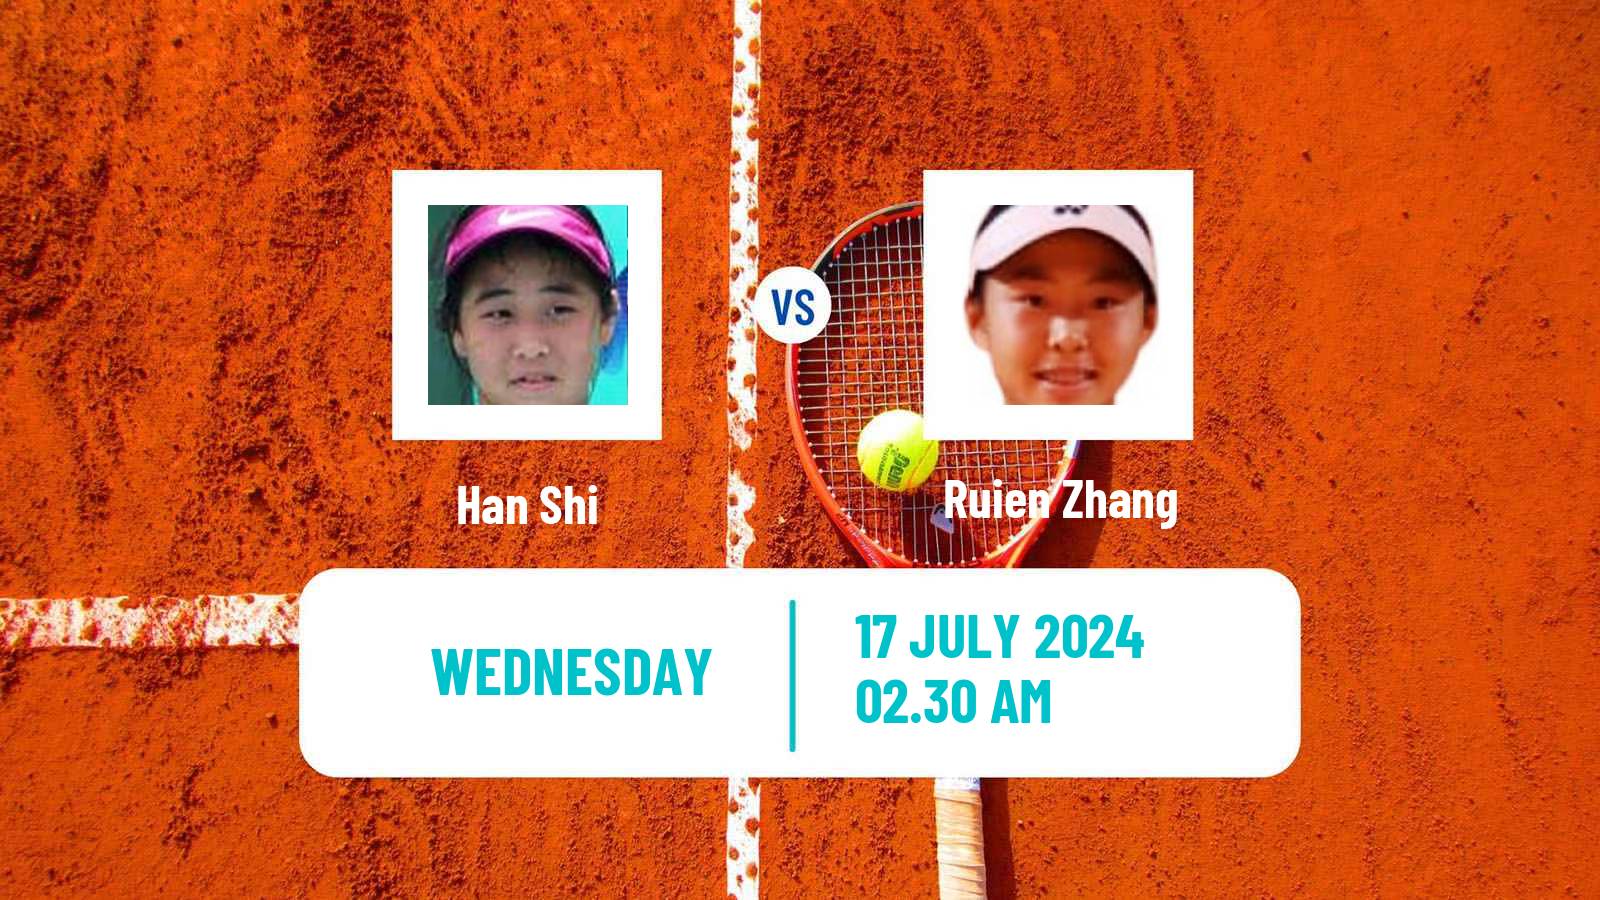 Tennis ITF W35 Tianjin 2 Women Han Shi - Ruien Zhang